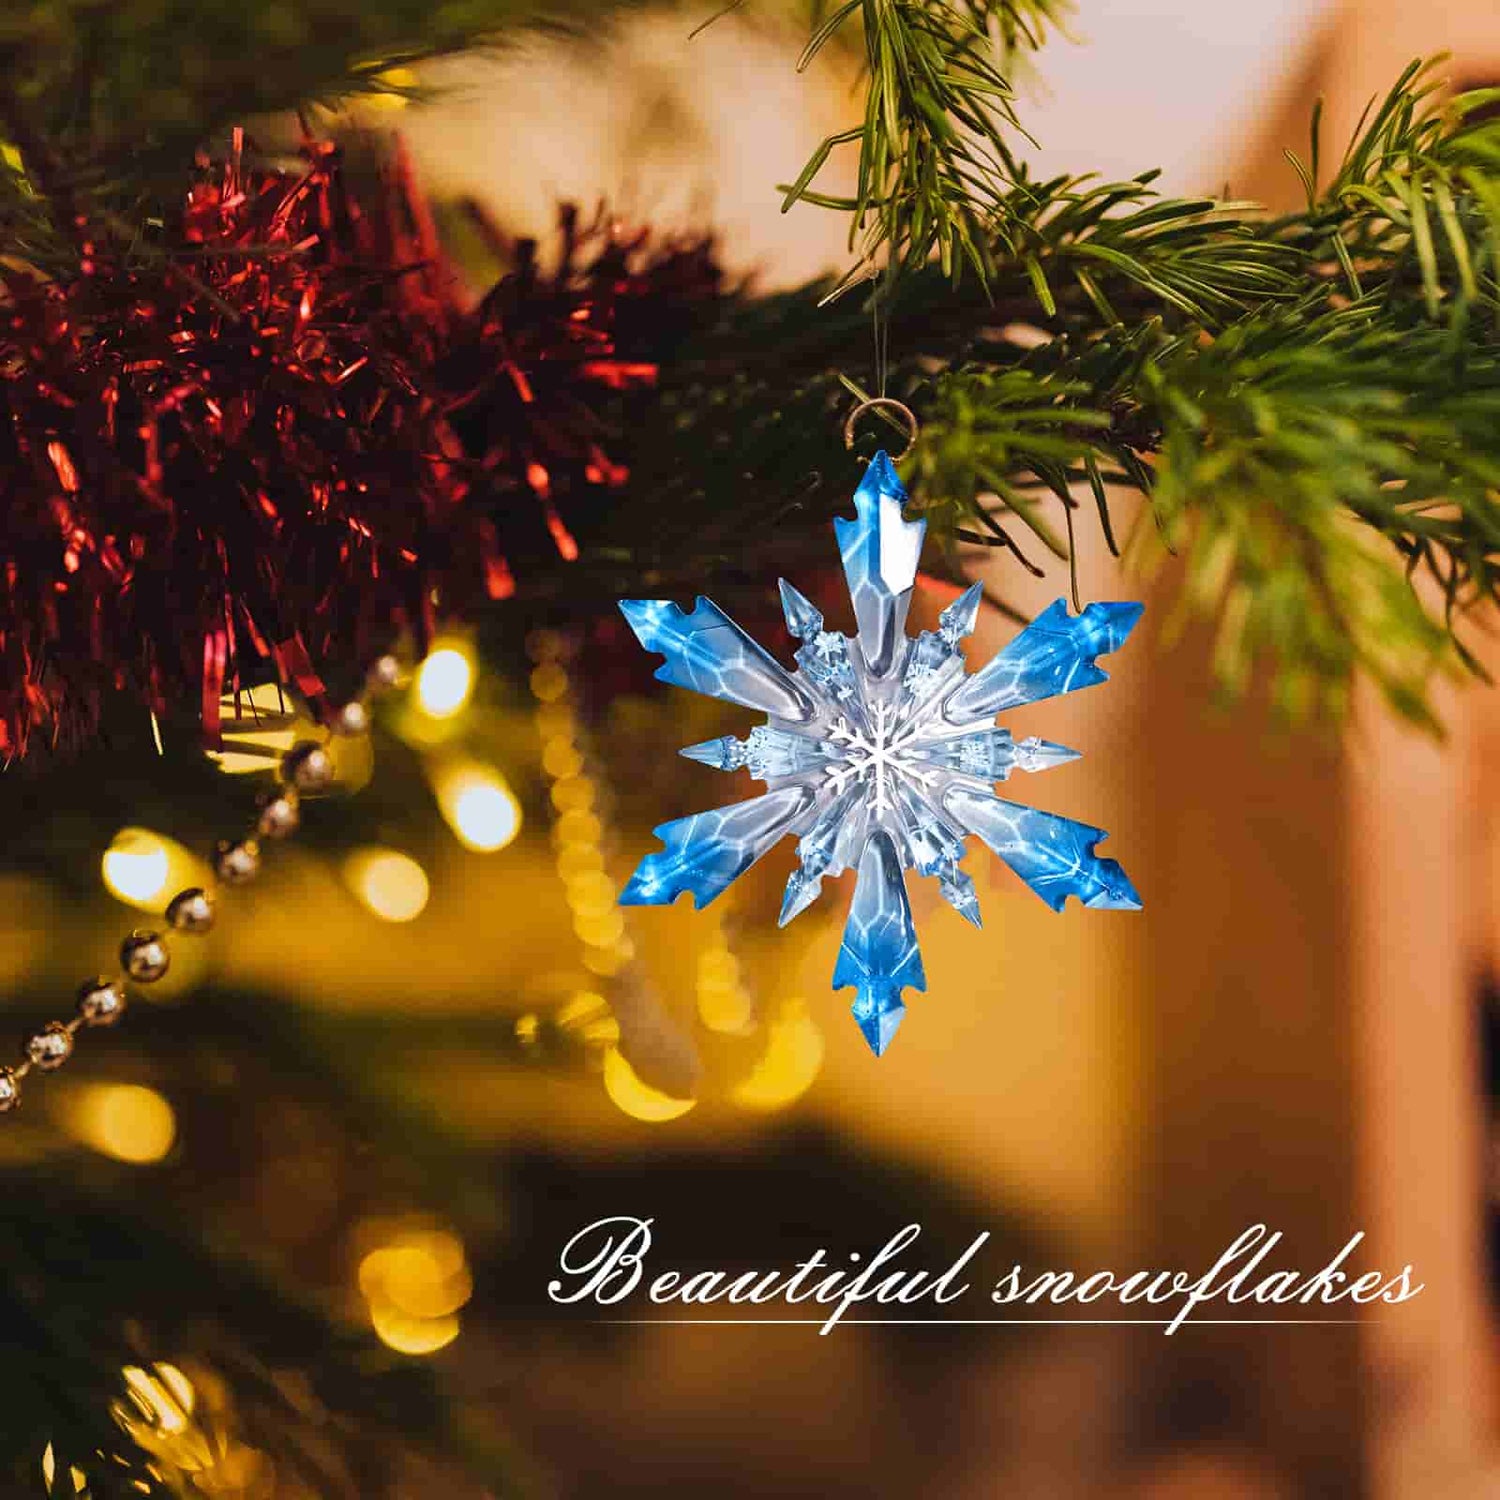 Pcs Resin Snowflake Mold Snowflake Silicone Mold Resin Epoxy Resin Mold  Christmas Snowflake